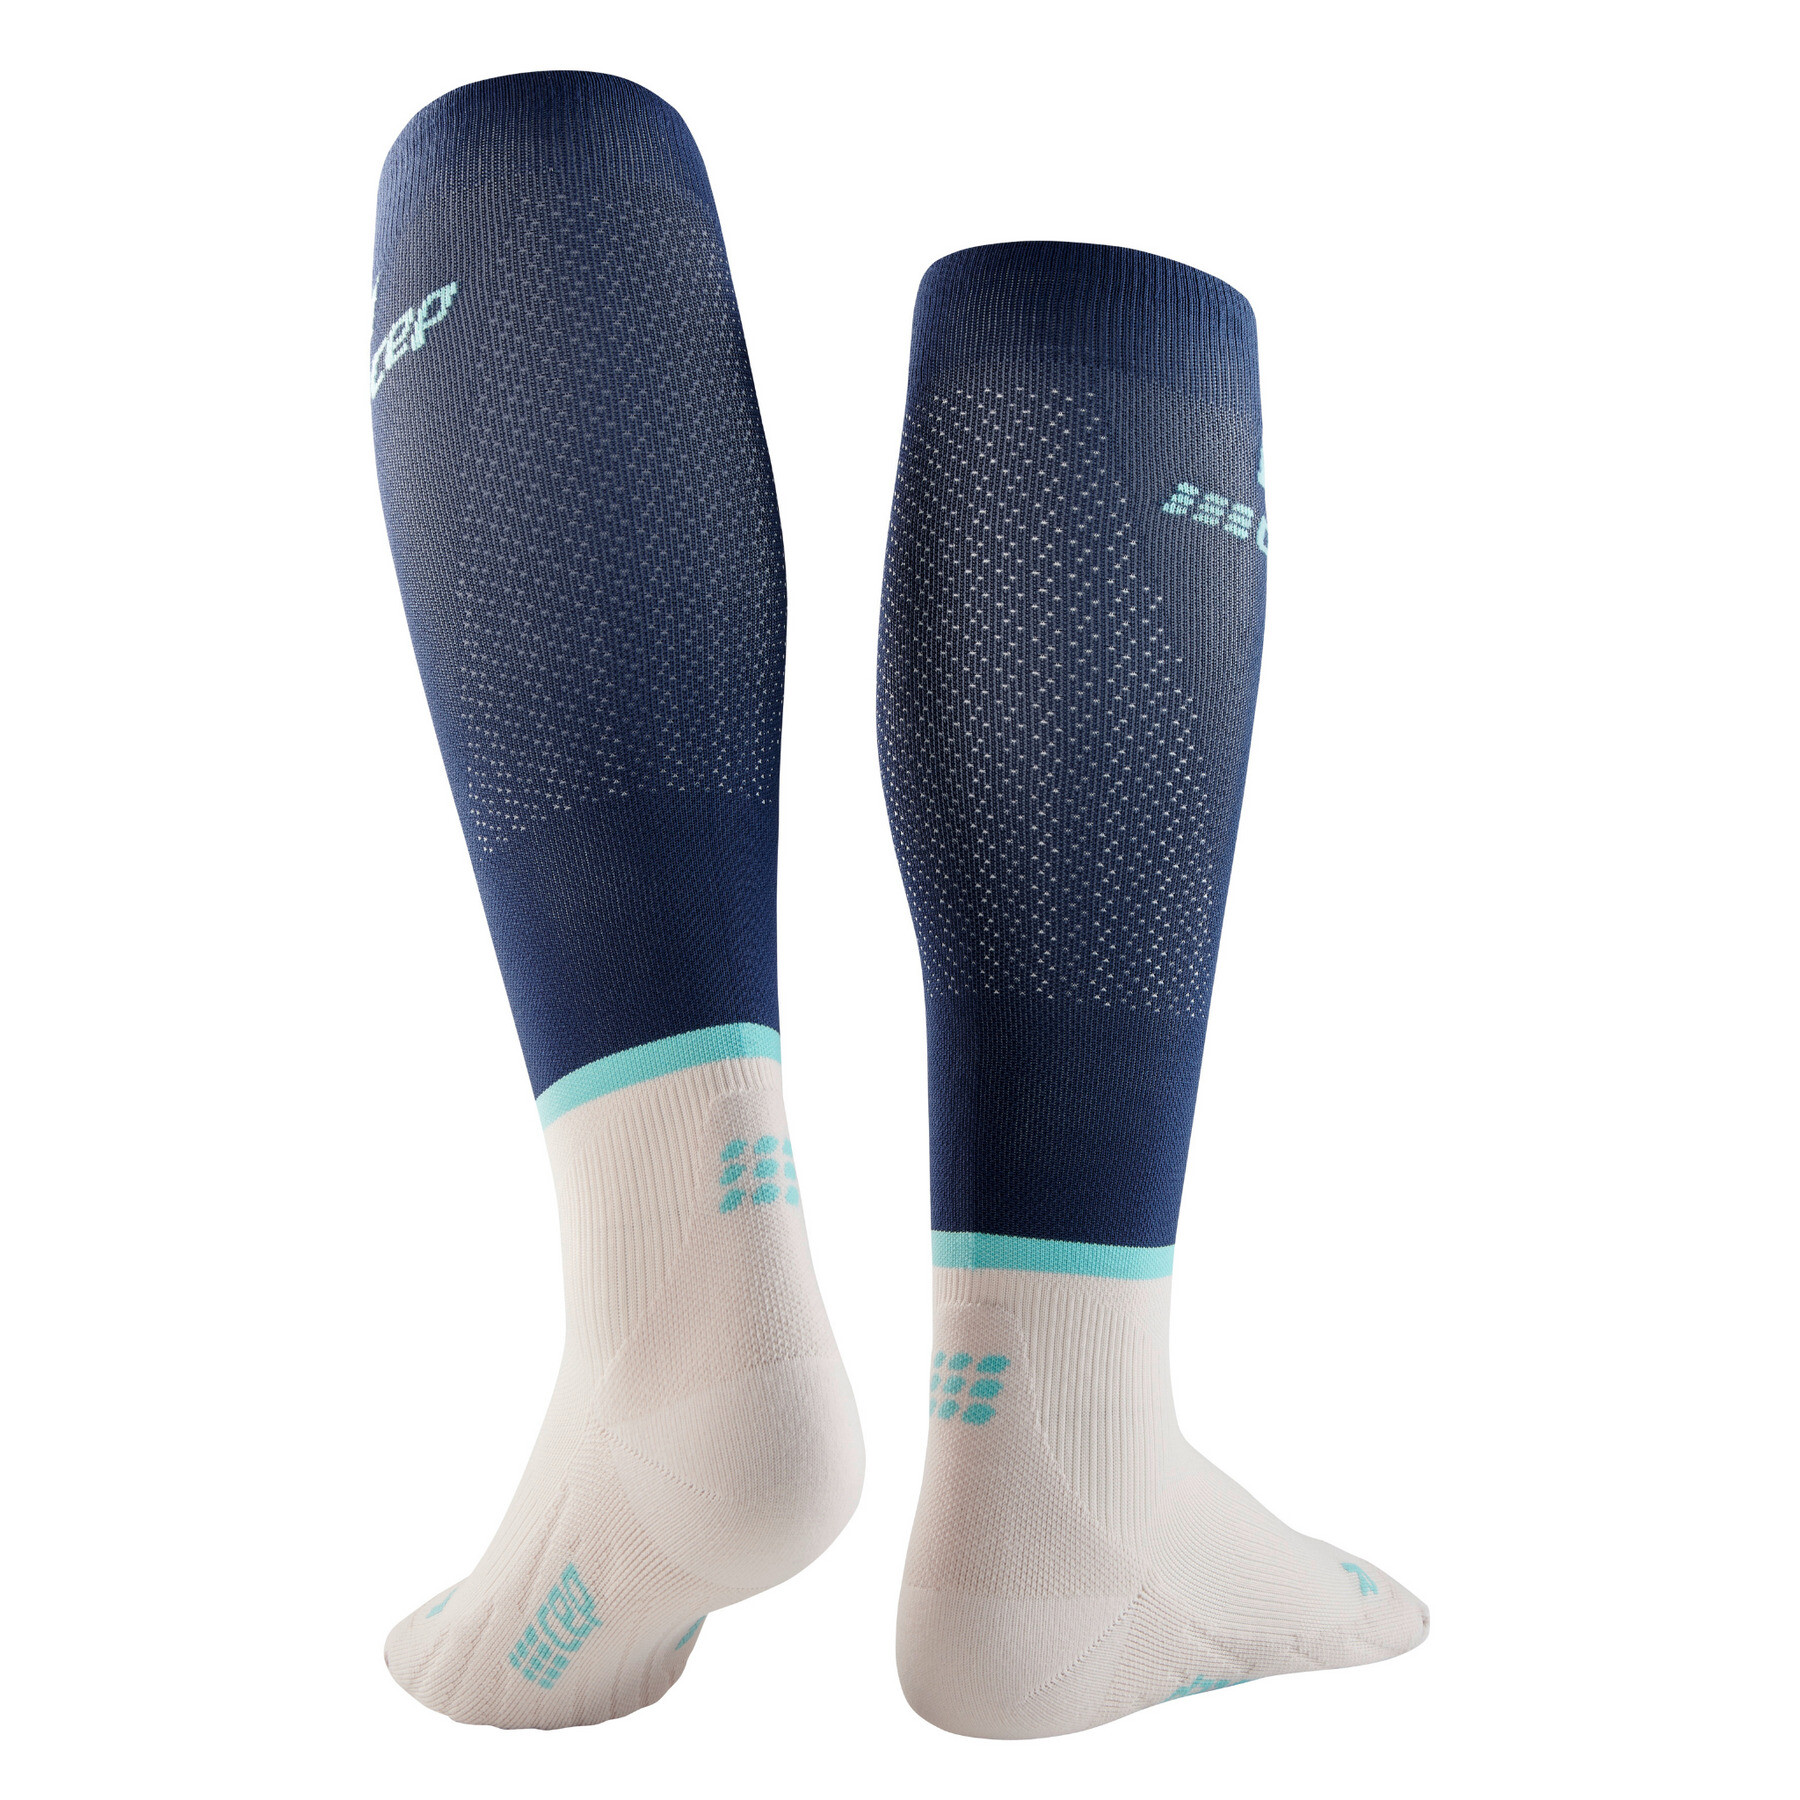 As meias de compressão run socks, altas v4 CEP Compression